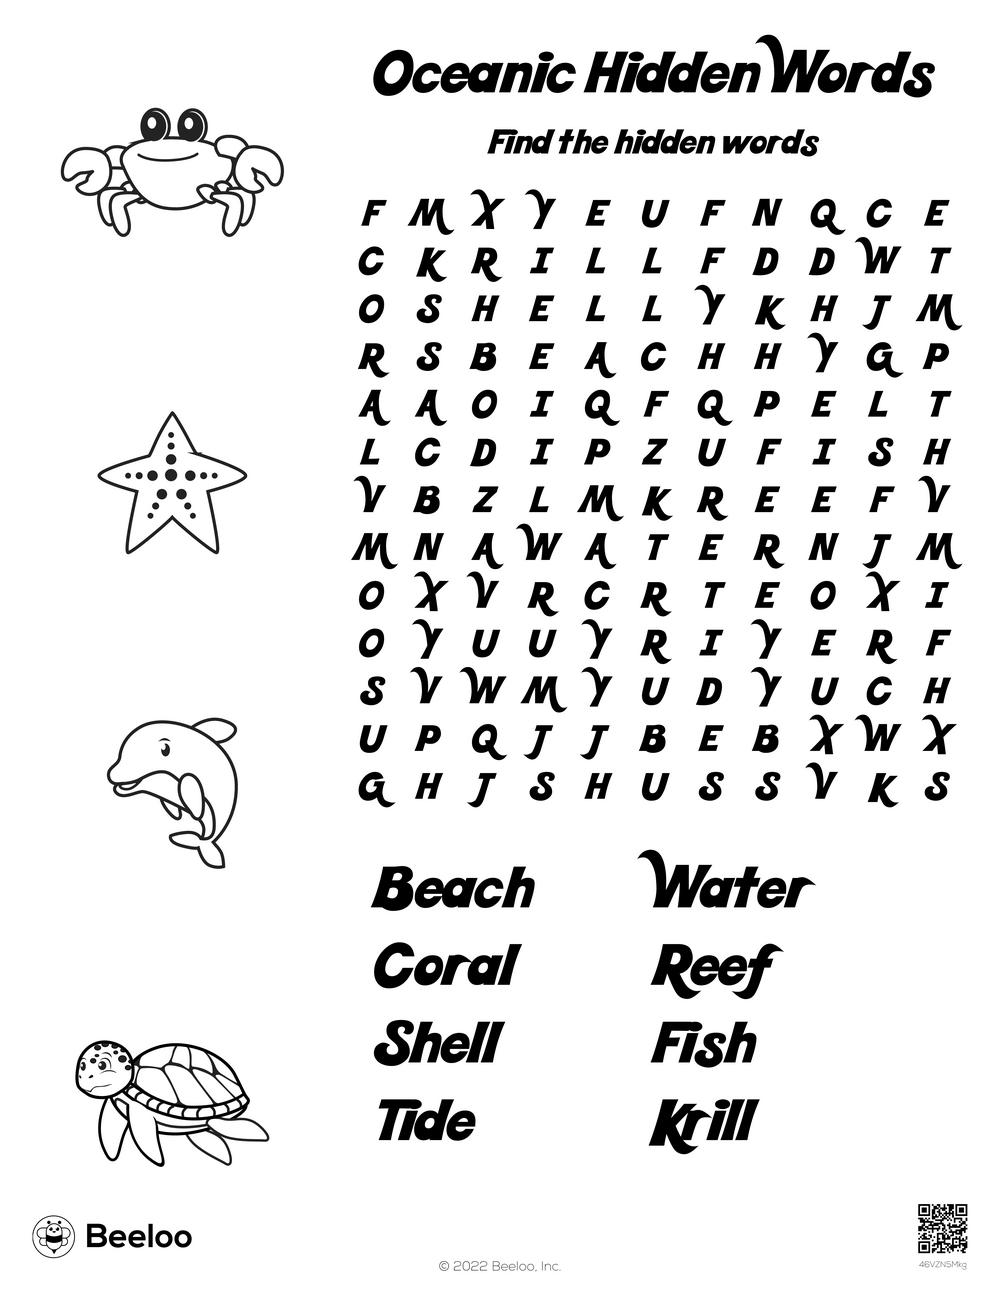 Ocean Word Search Printable